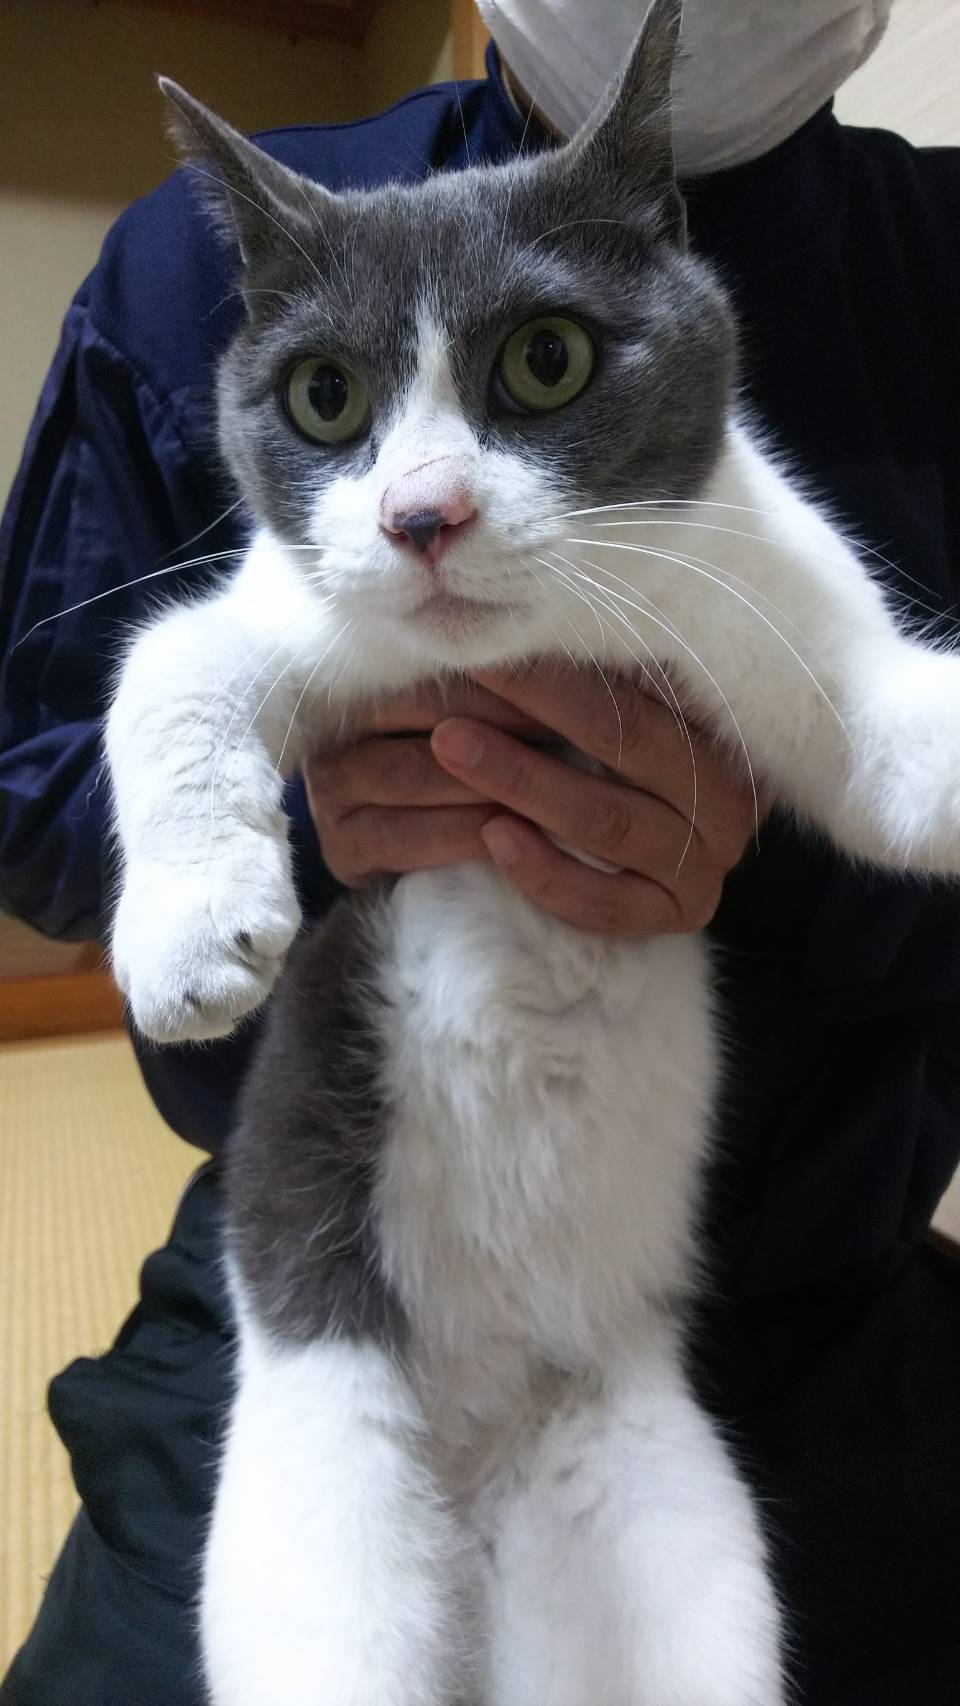 保護しています 迷い猫 迷い犬情報 猫と暮らす会 静岡県浜松市を拠点とし 人と猫の共生をテーマに活動を行なっております 猫 の里親募集中 譲渡会も定期的に行っています